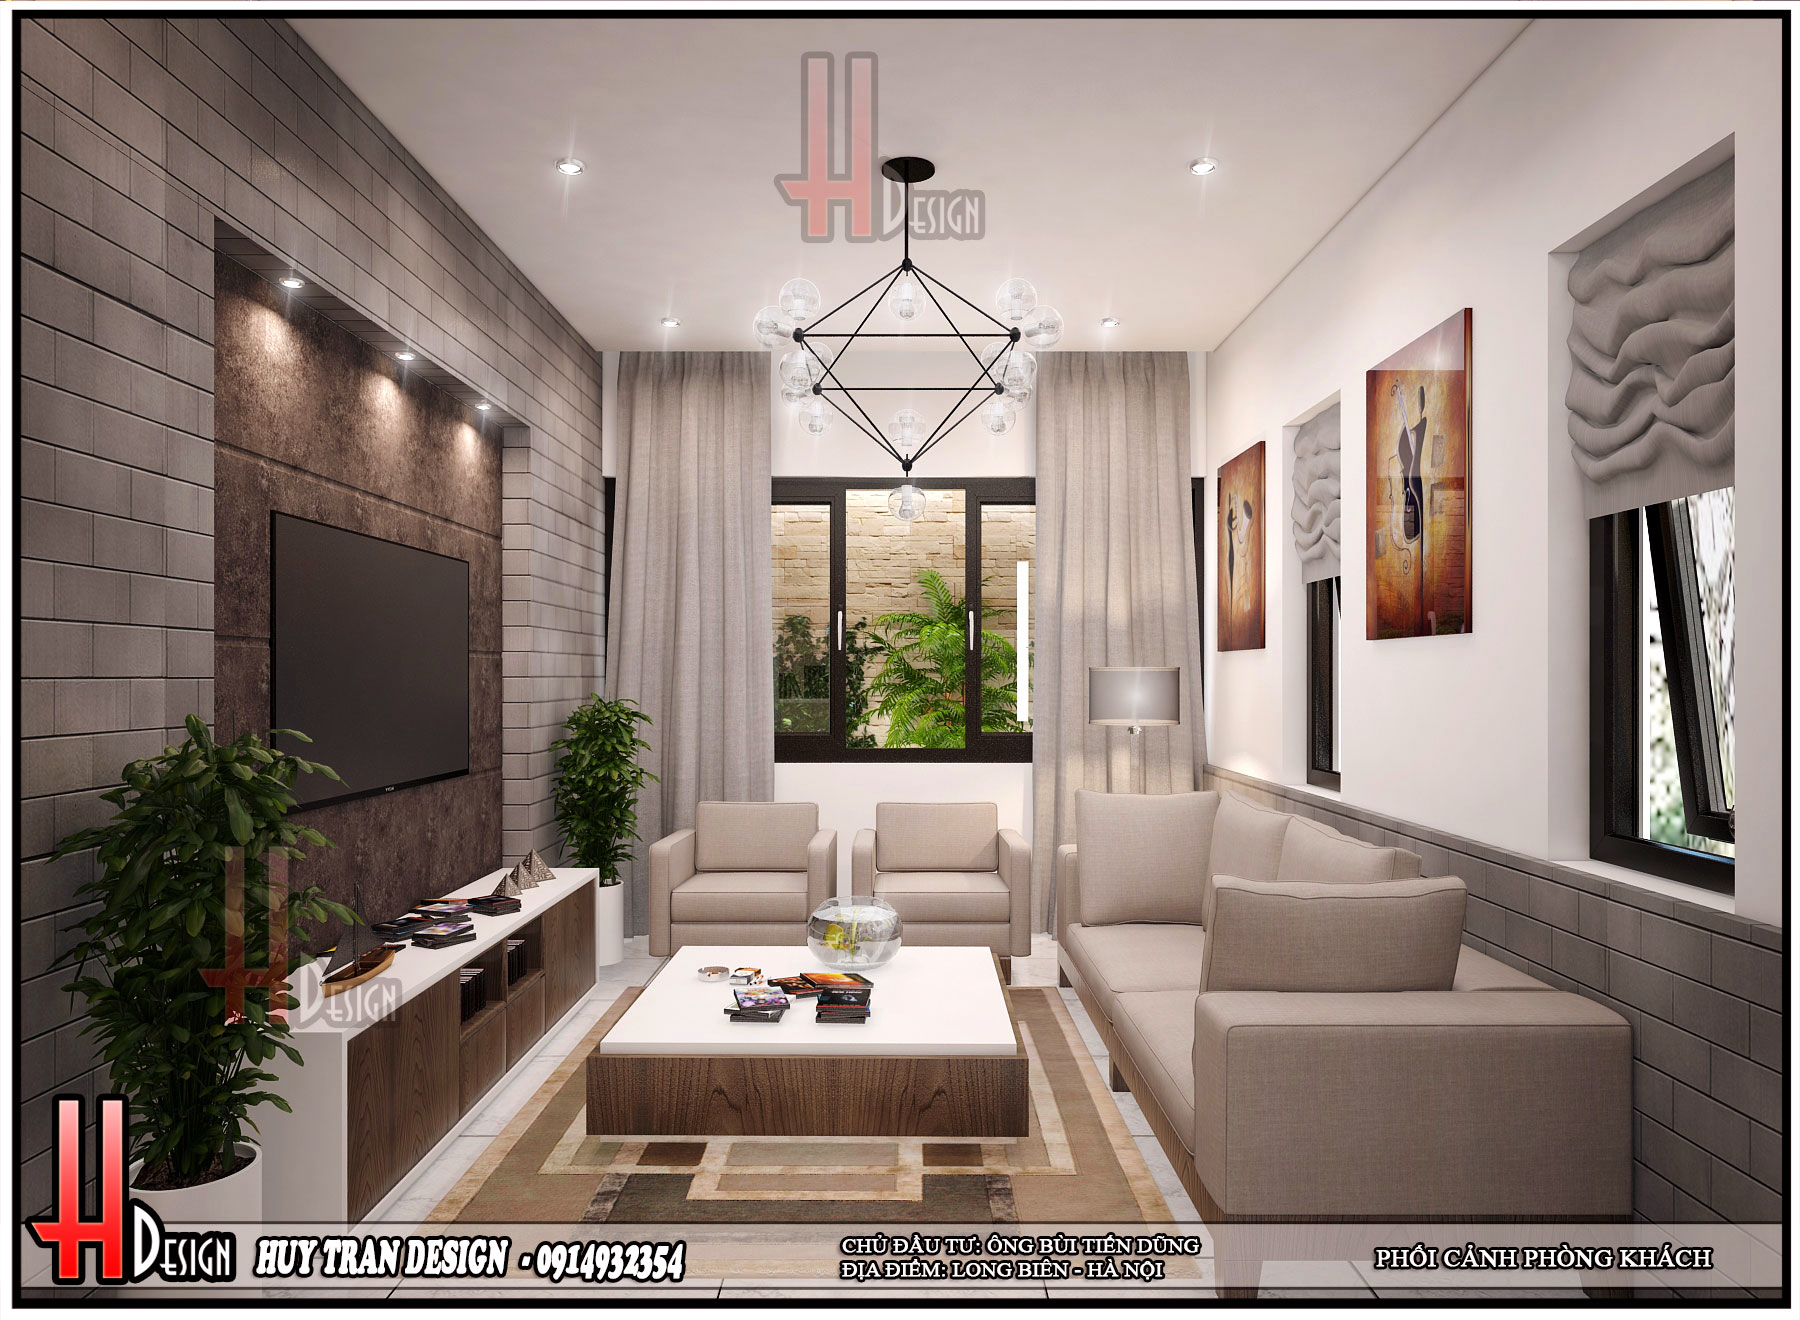 Thiết kế nội thất phòng khách nhà ống 4 tầng - Huytran déign